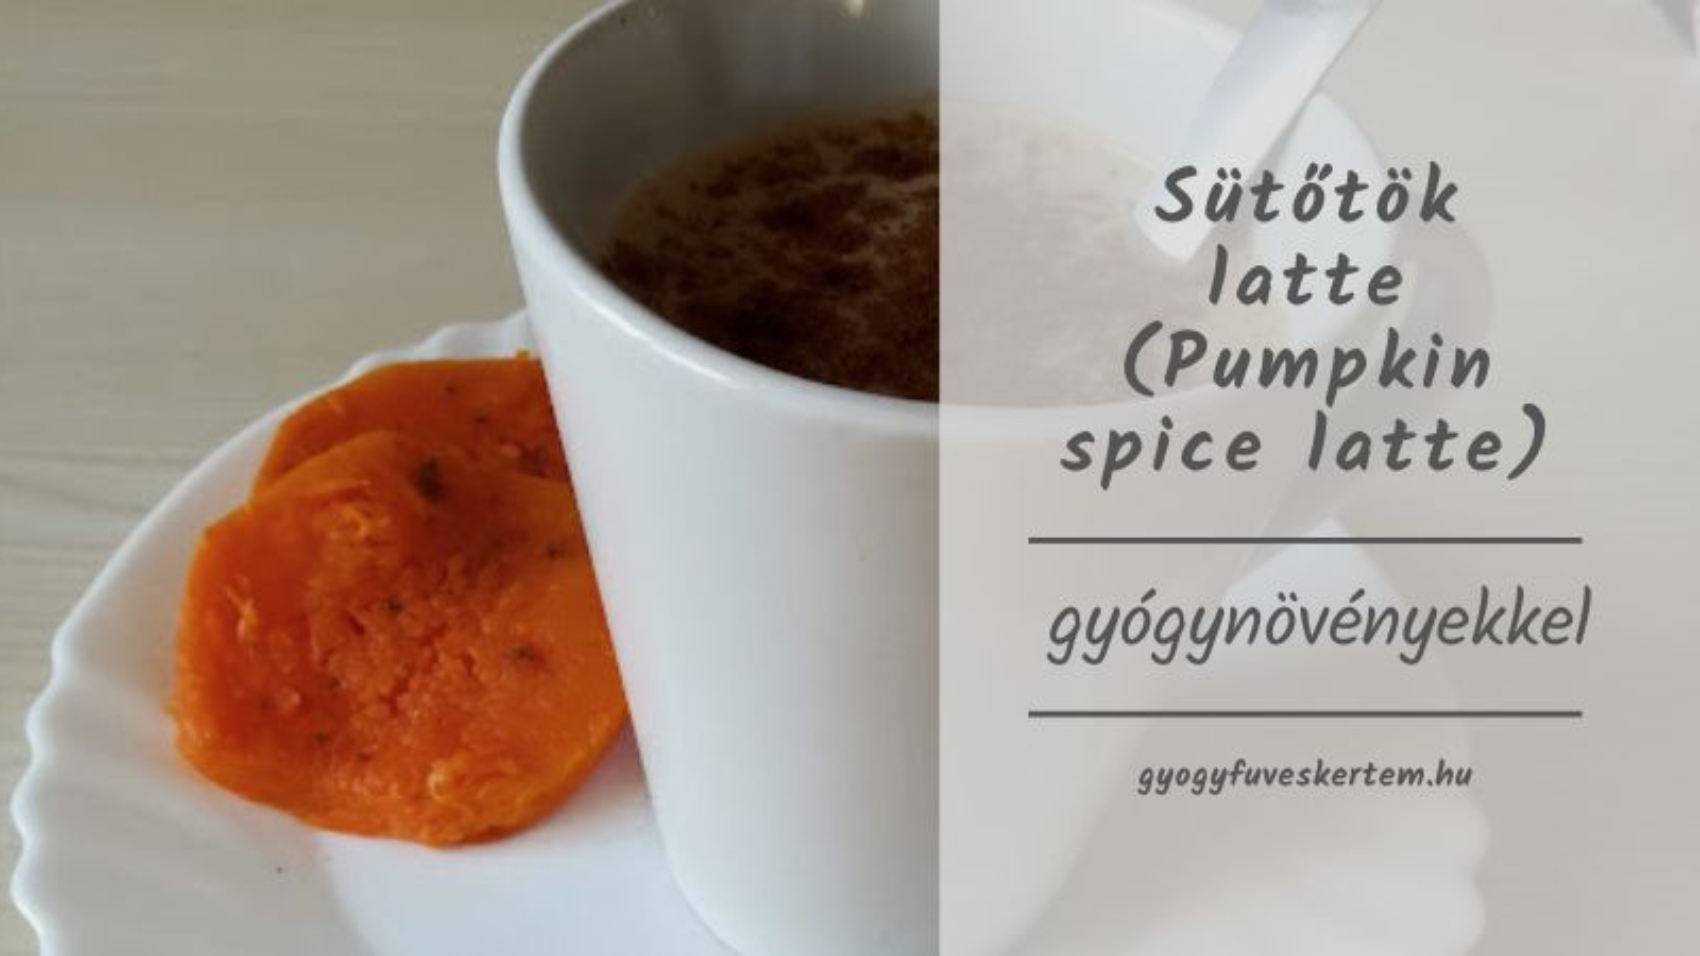 Sütőtökfűszeres latte gyógynövényekkel – pumpkin spice latte másképp